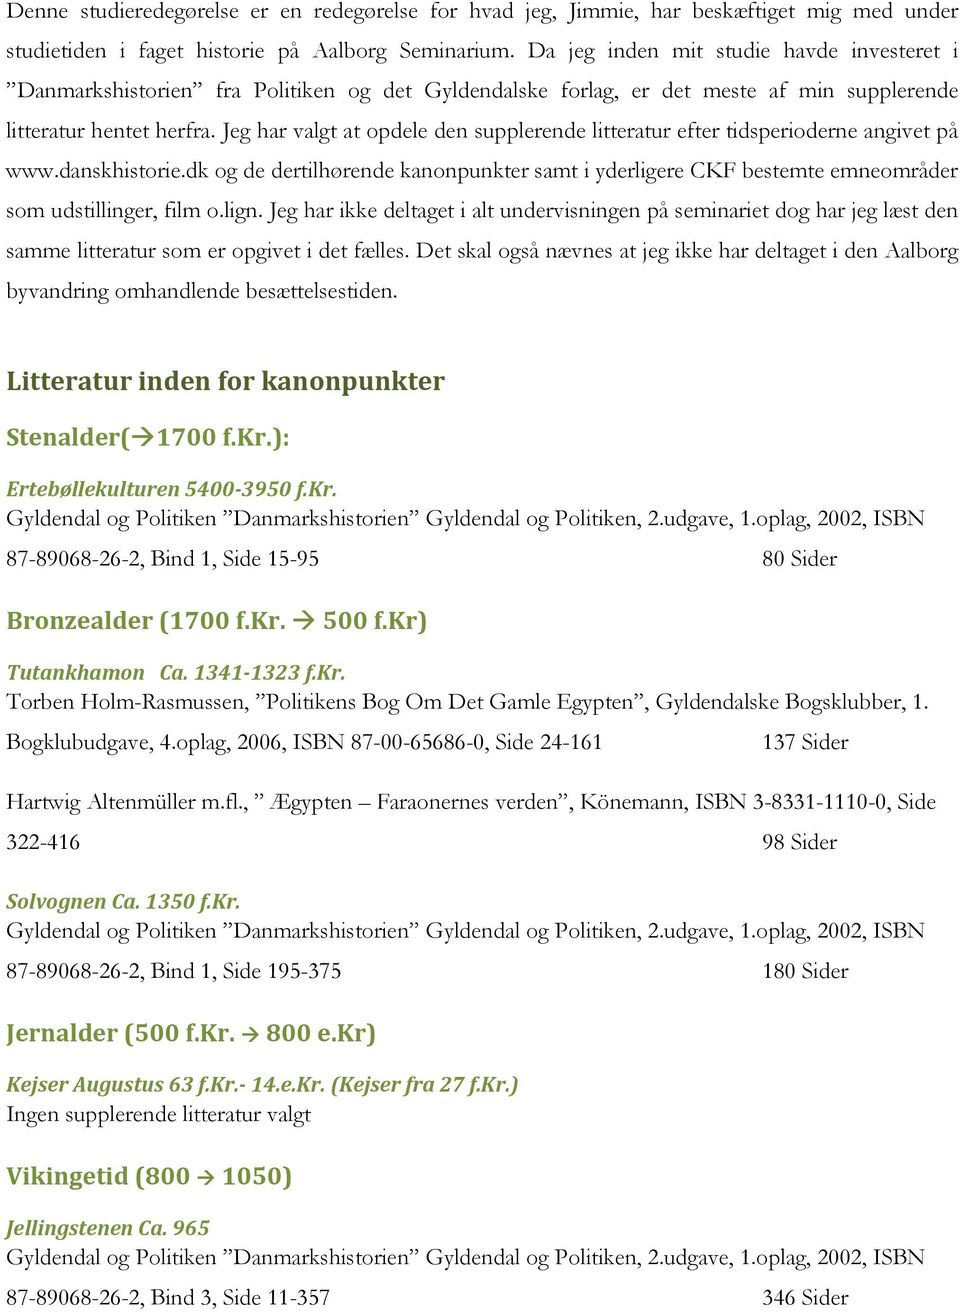 Jeg har valgt at opdele den supplerende litteratur efter tidsperioderne angivet på www.danskhistorie.